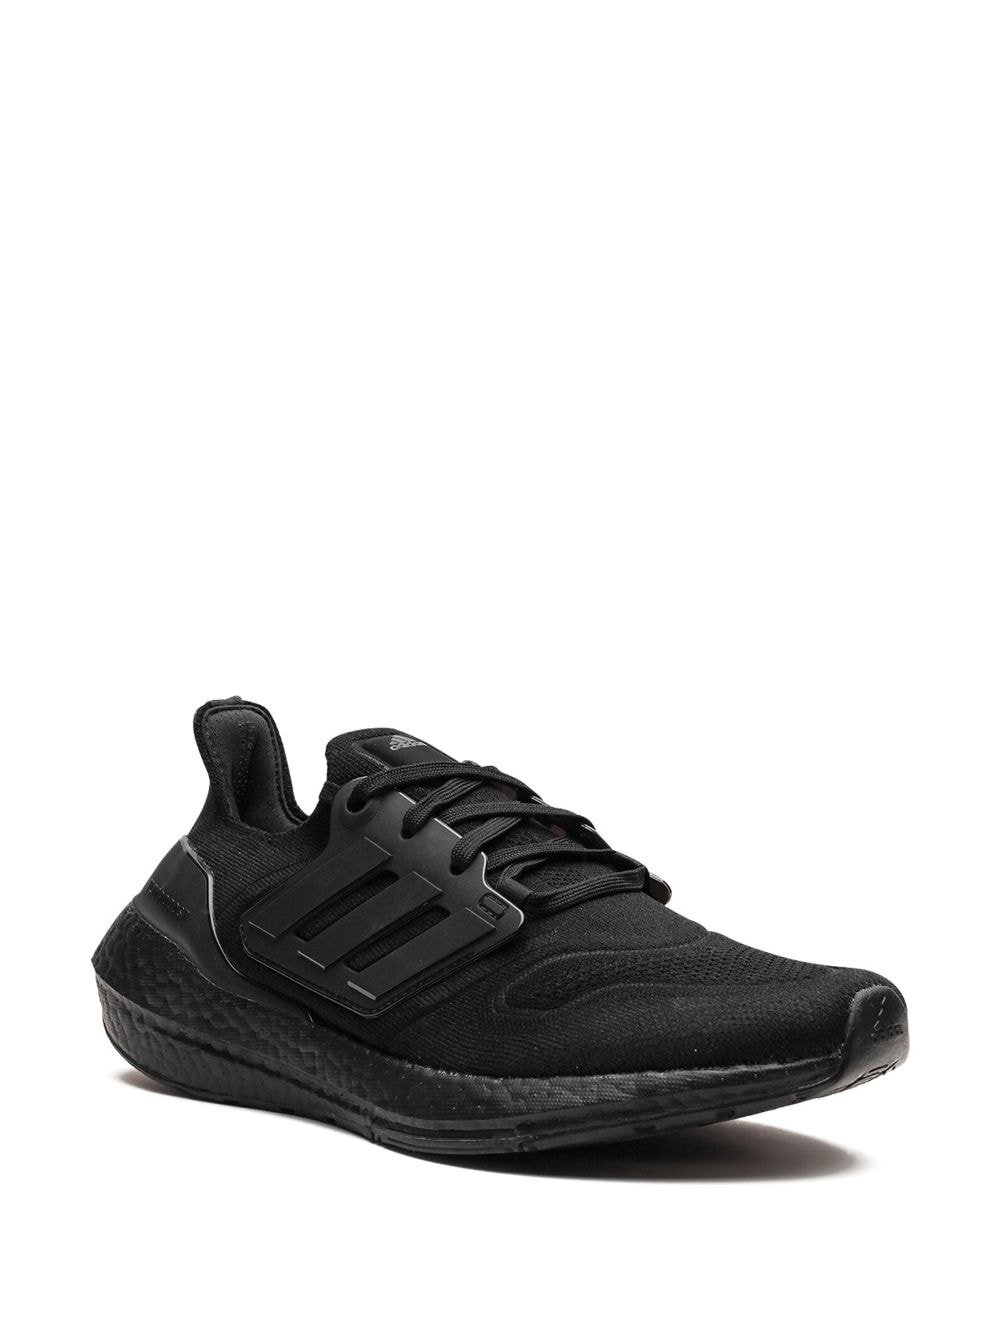 Ultraboost 22 "Triple Black" sneakers - 2